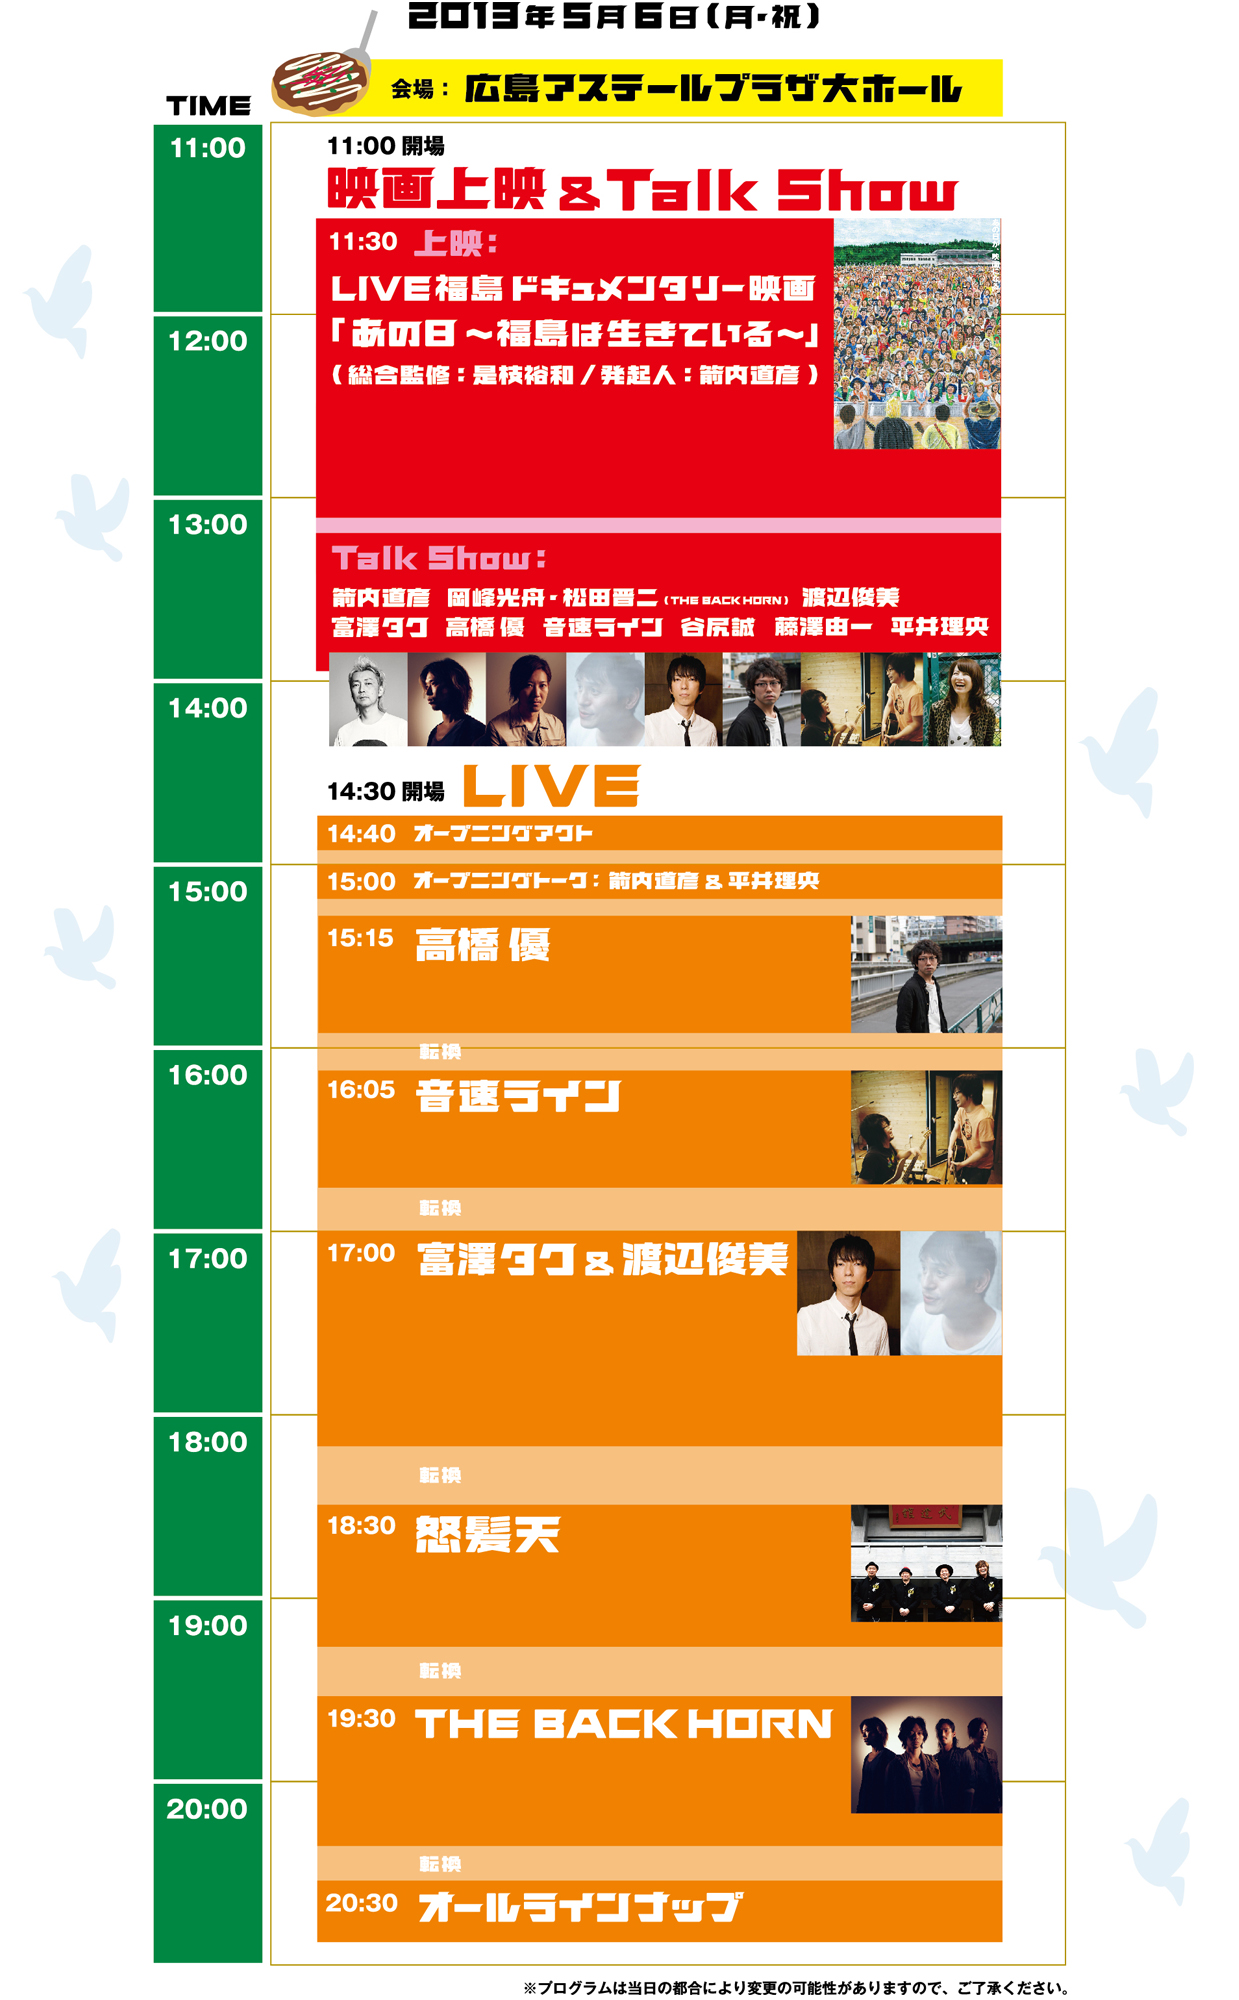 timetable_hiroshima